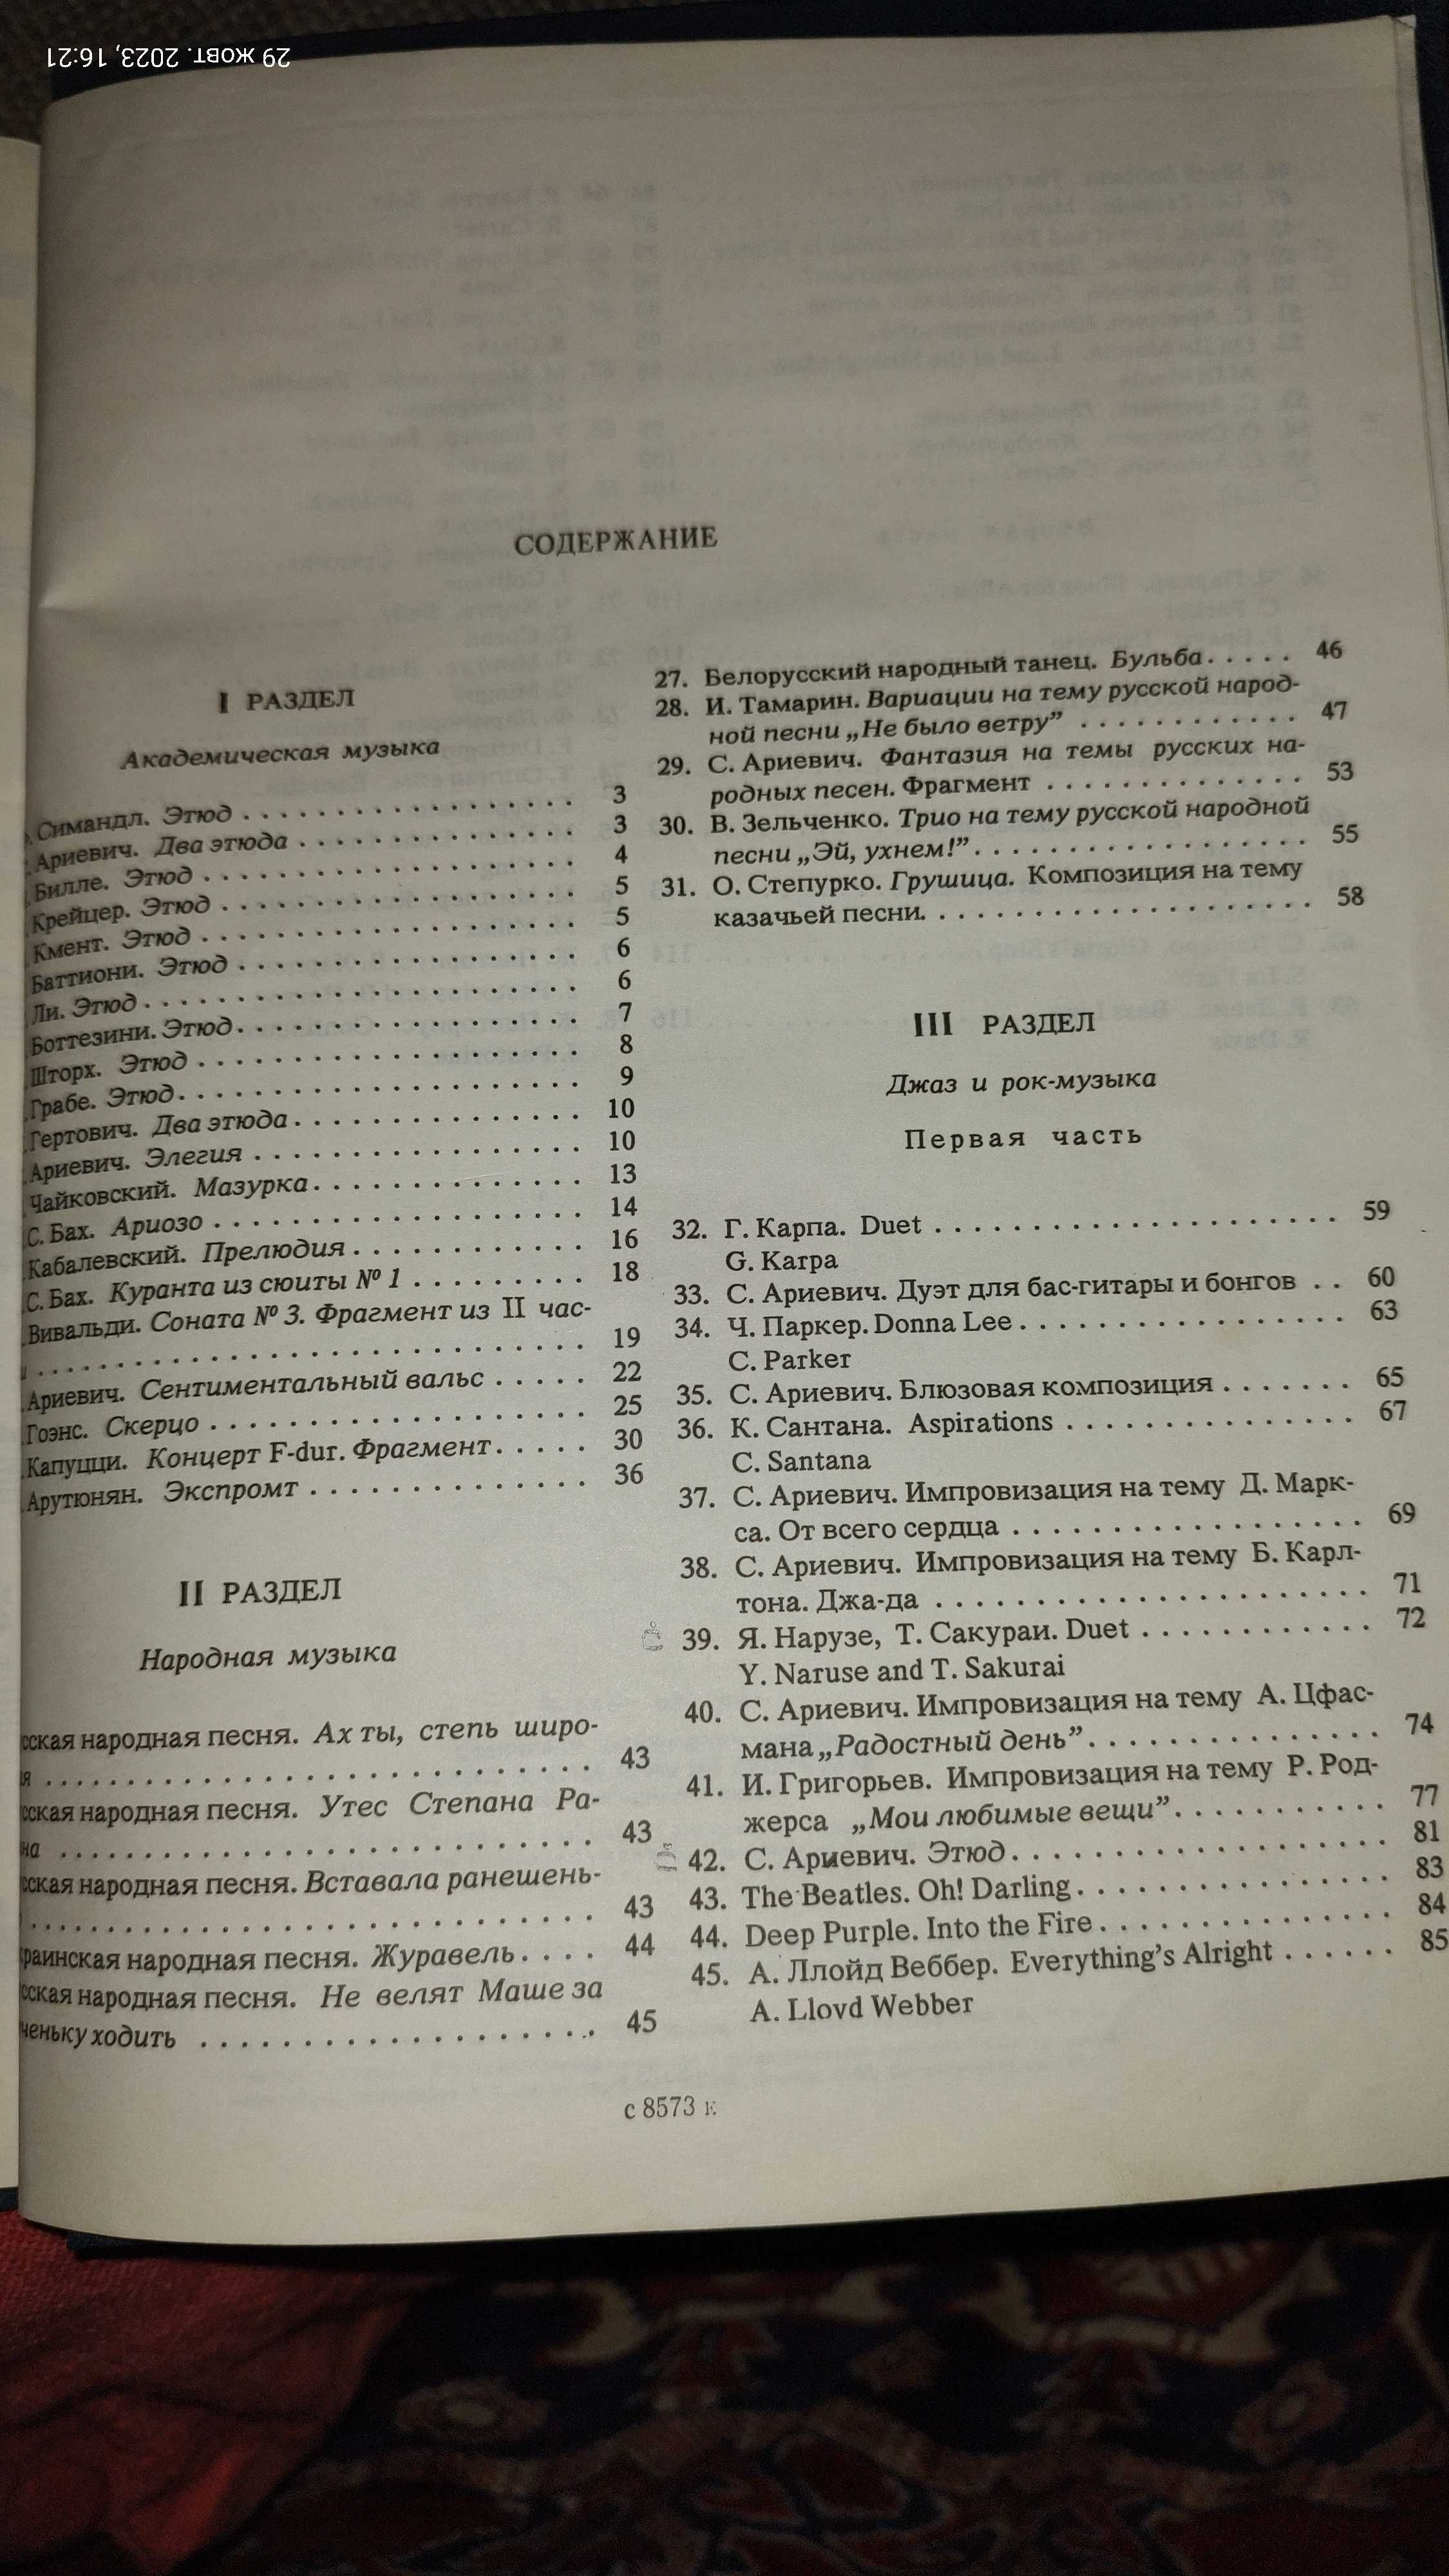 Книжка хрестоматия игры на бас-гитаре, С.Ариевич, 1989 року.